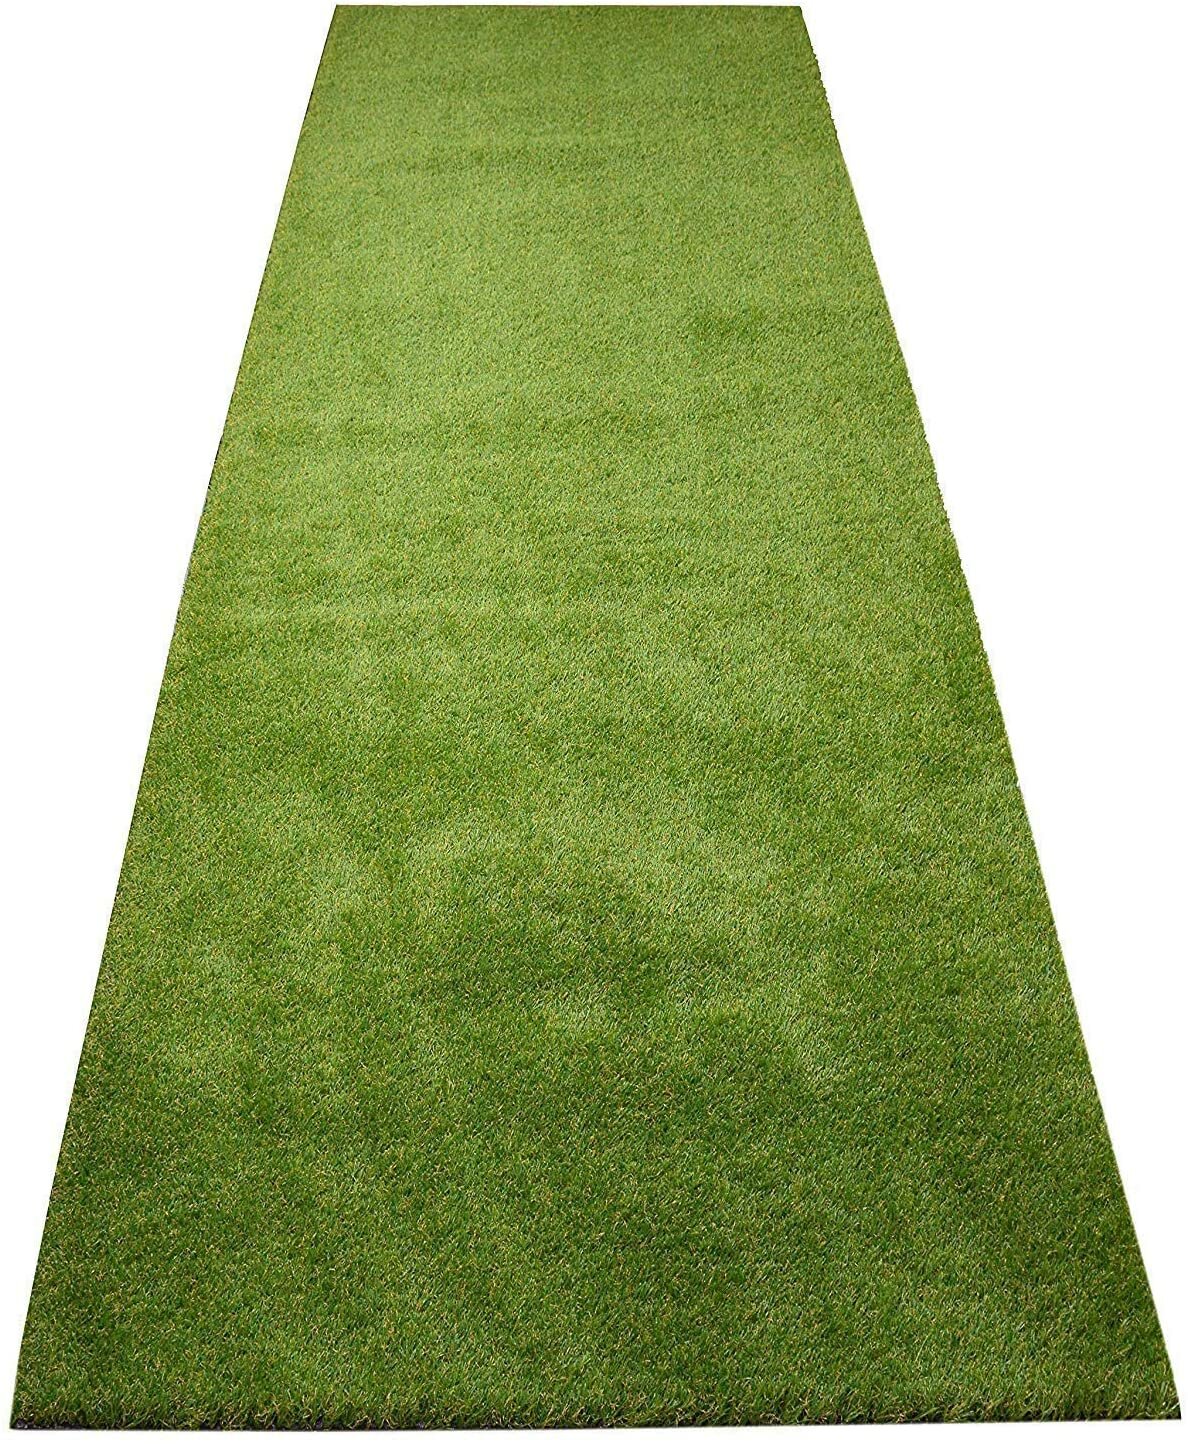 https://assets.wfcdn.com/im/24882512/compr-r85/1217/121789987/indoor-outdoor-artificial-natural-look-grass-turf-carpet.jpg